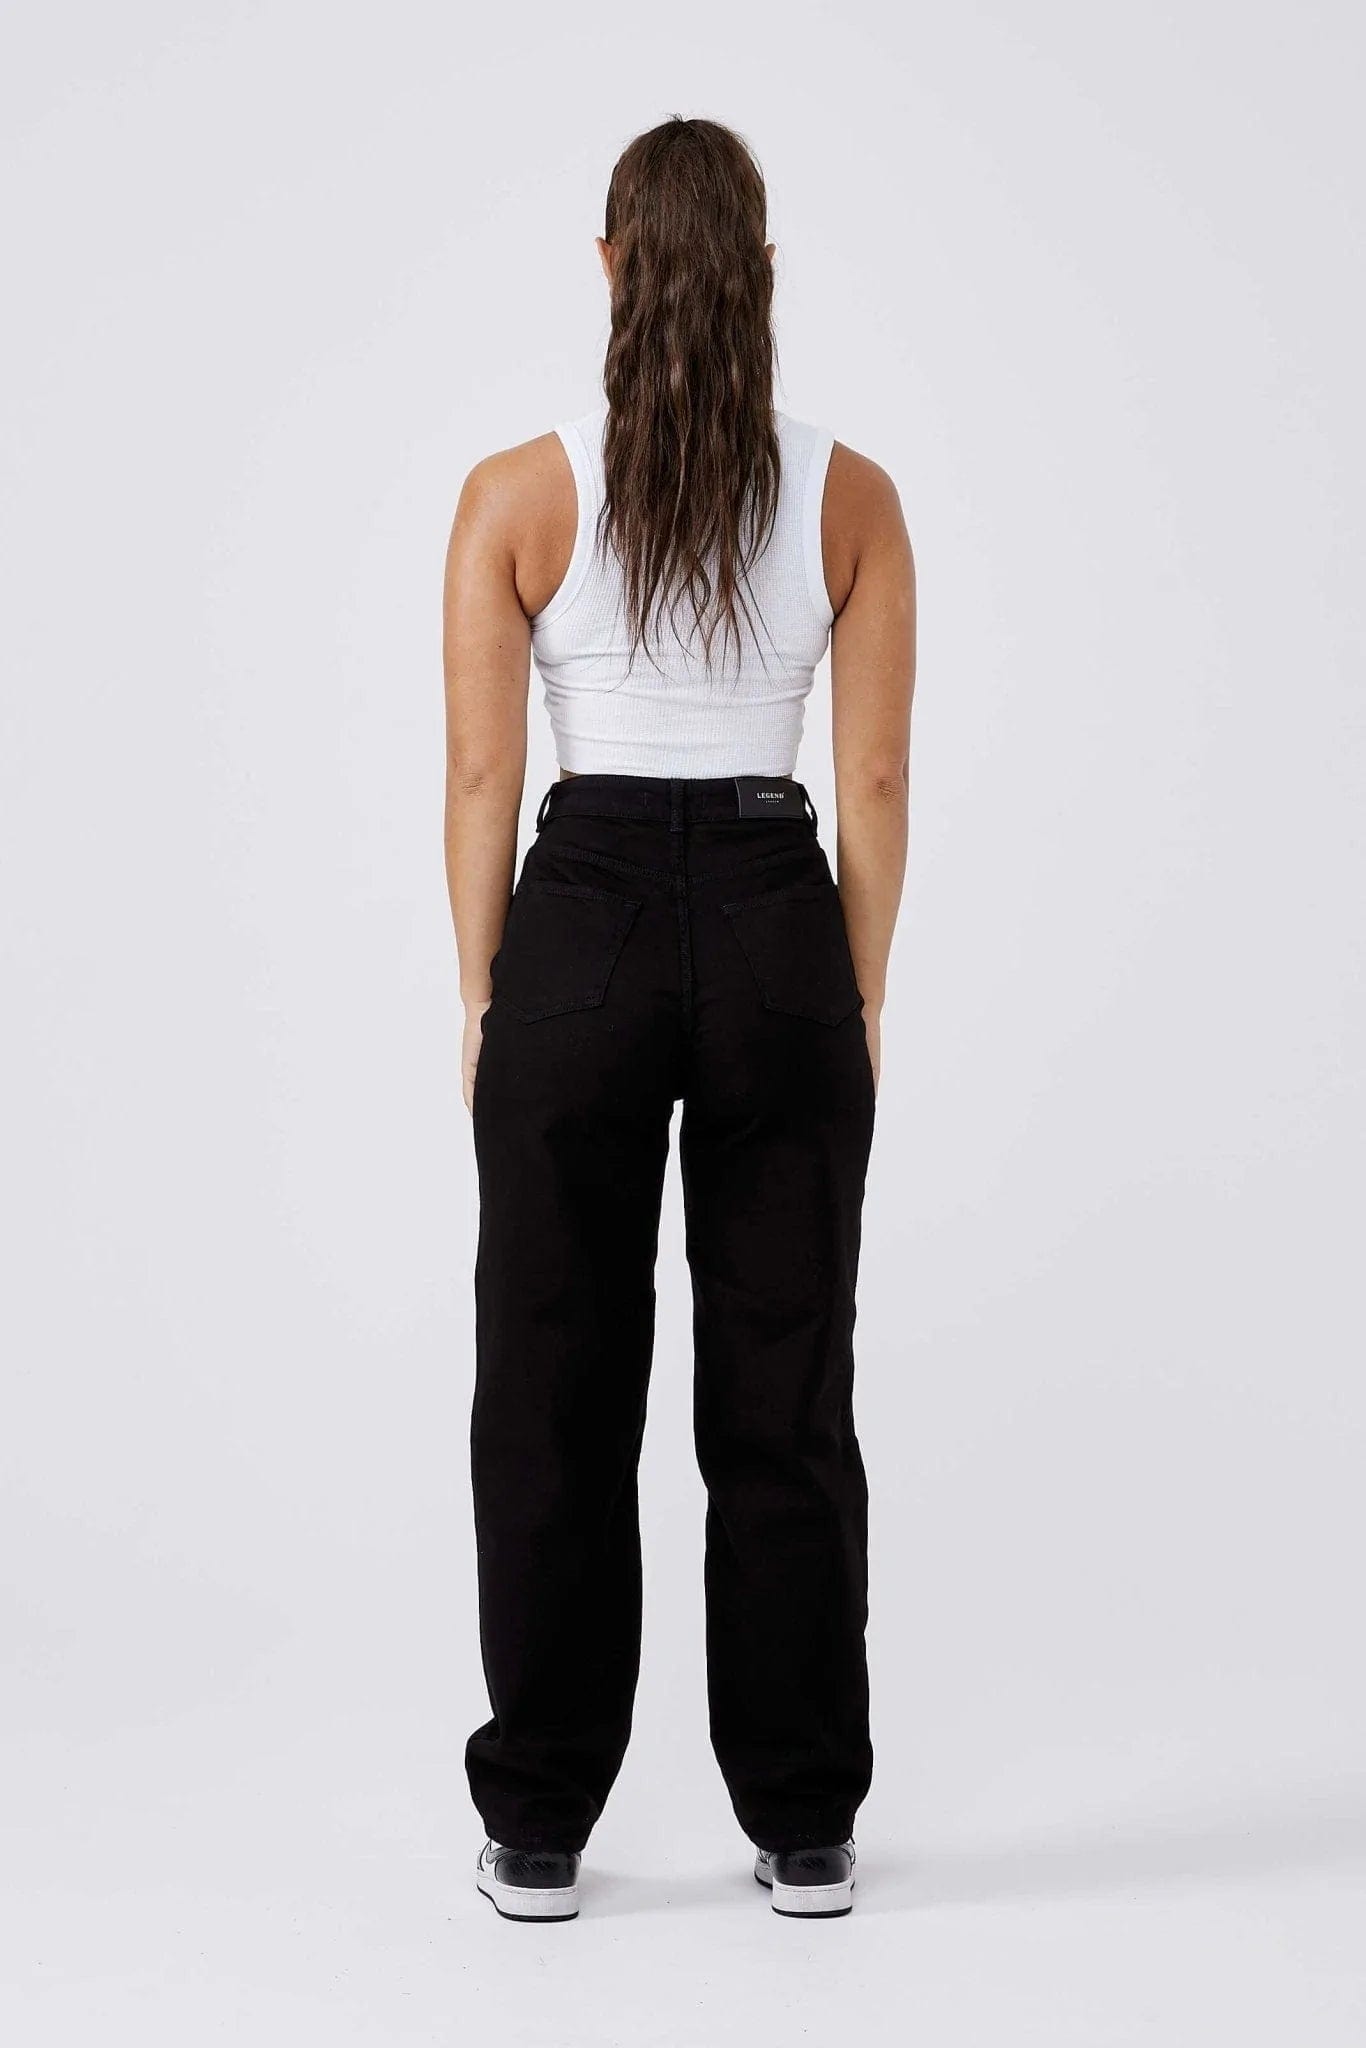 Legend London Womens Jeans BAGGY JEANS - BLACK